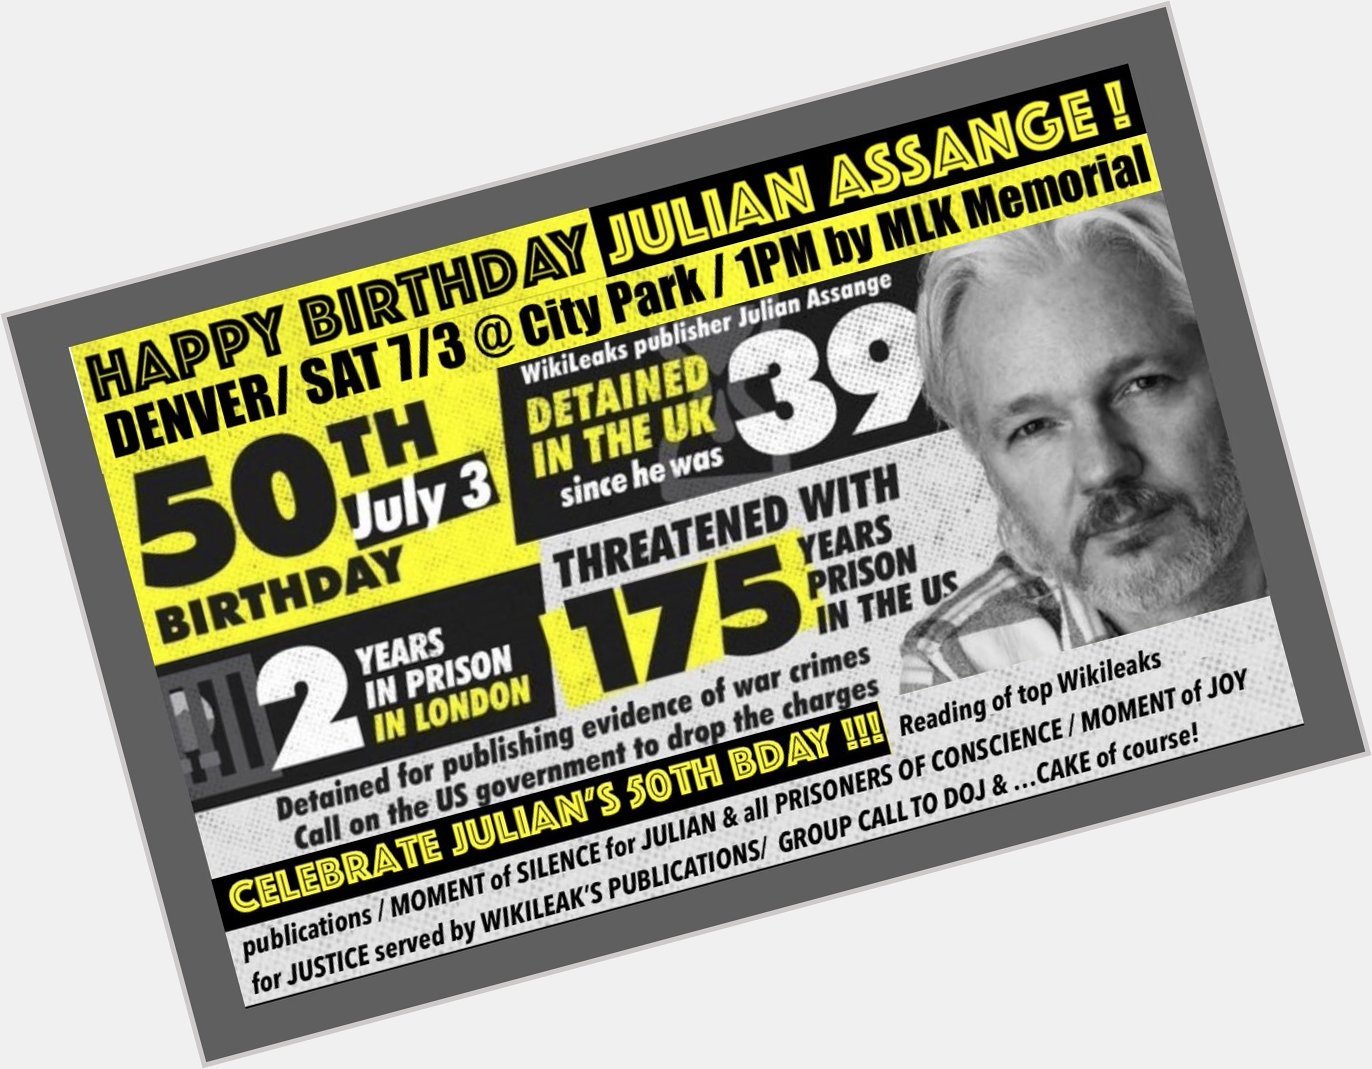 Happy Birthday Julian Assange, WikiLeak publisher 